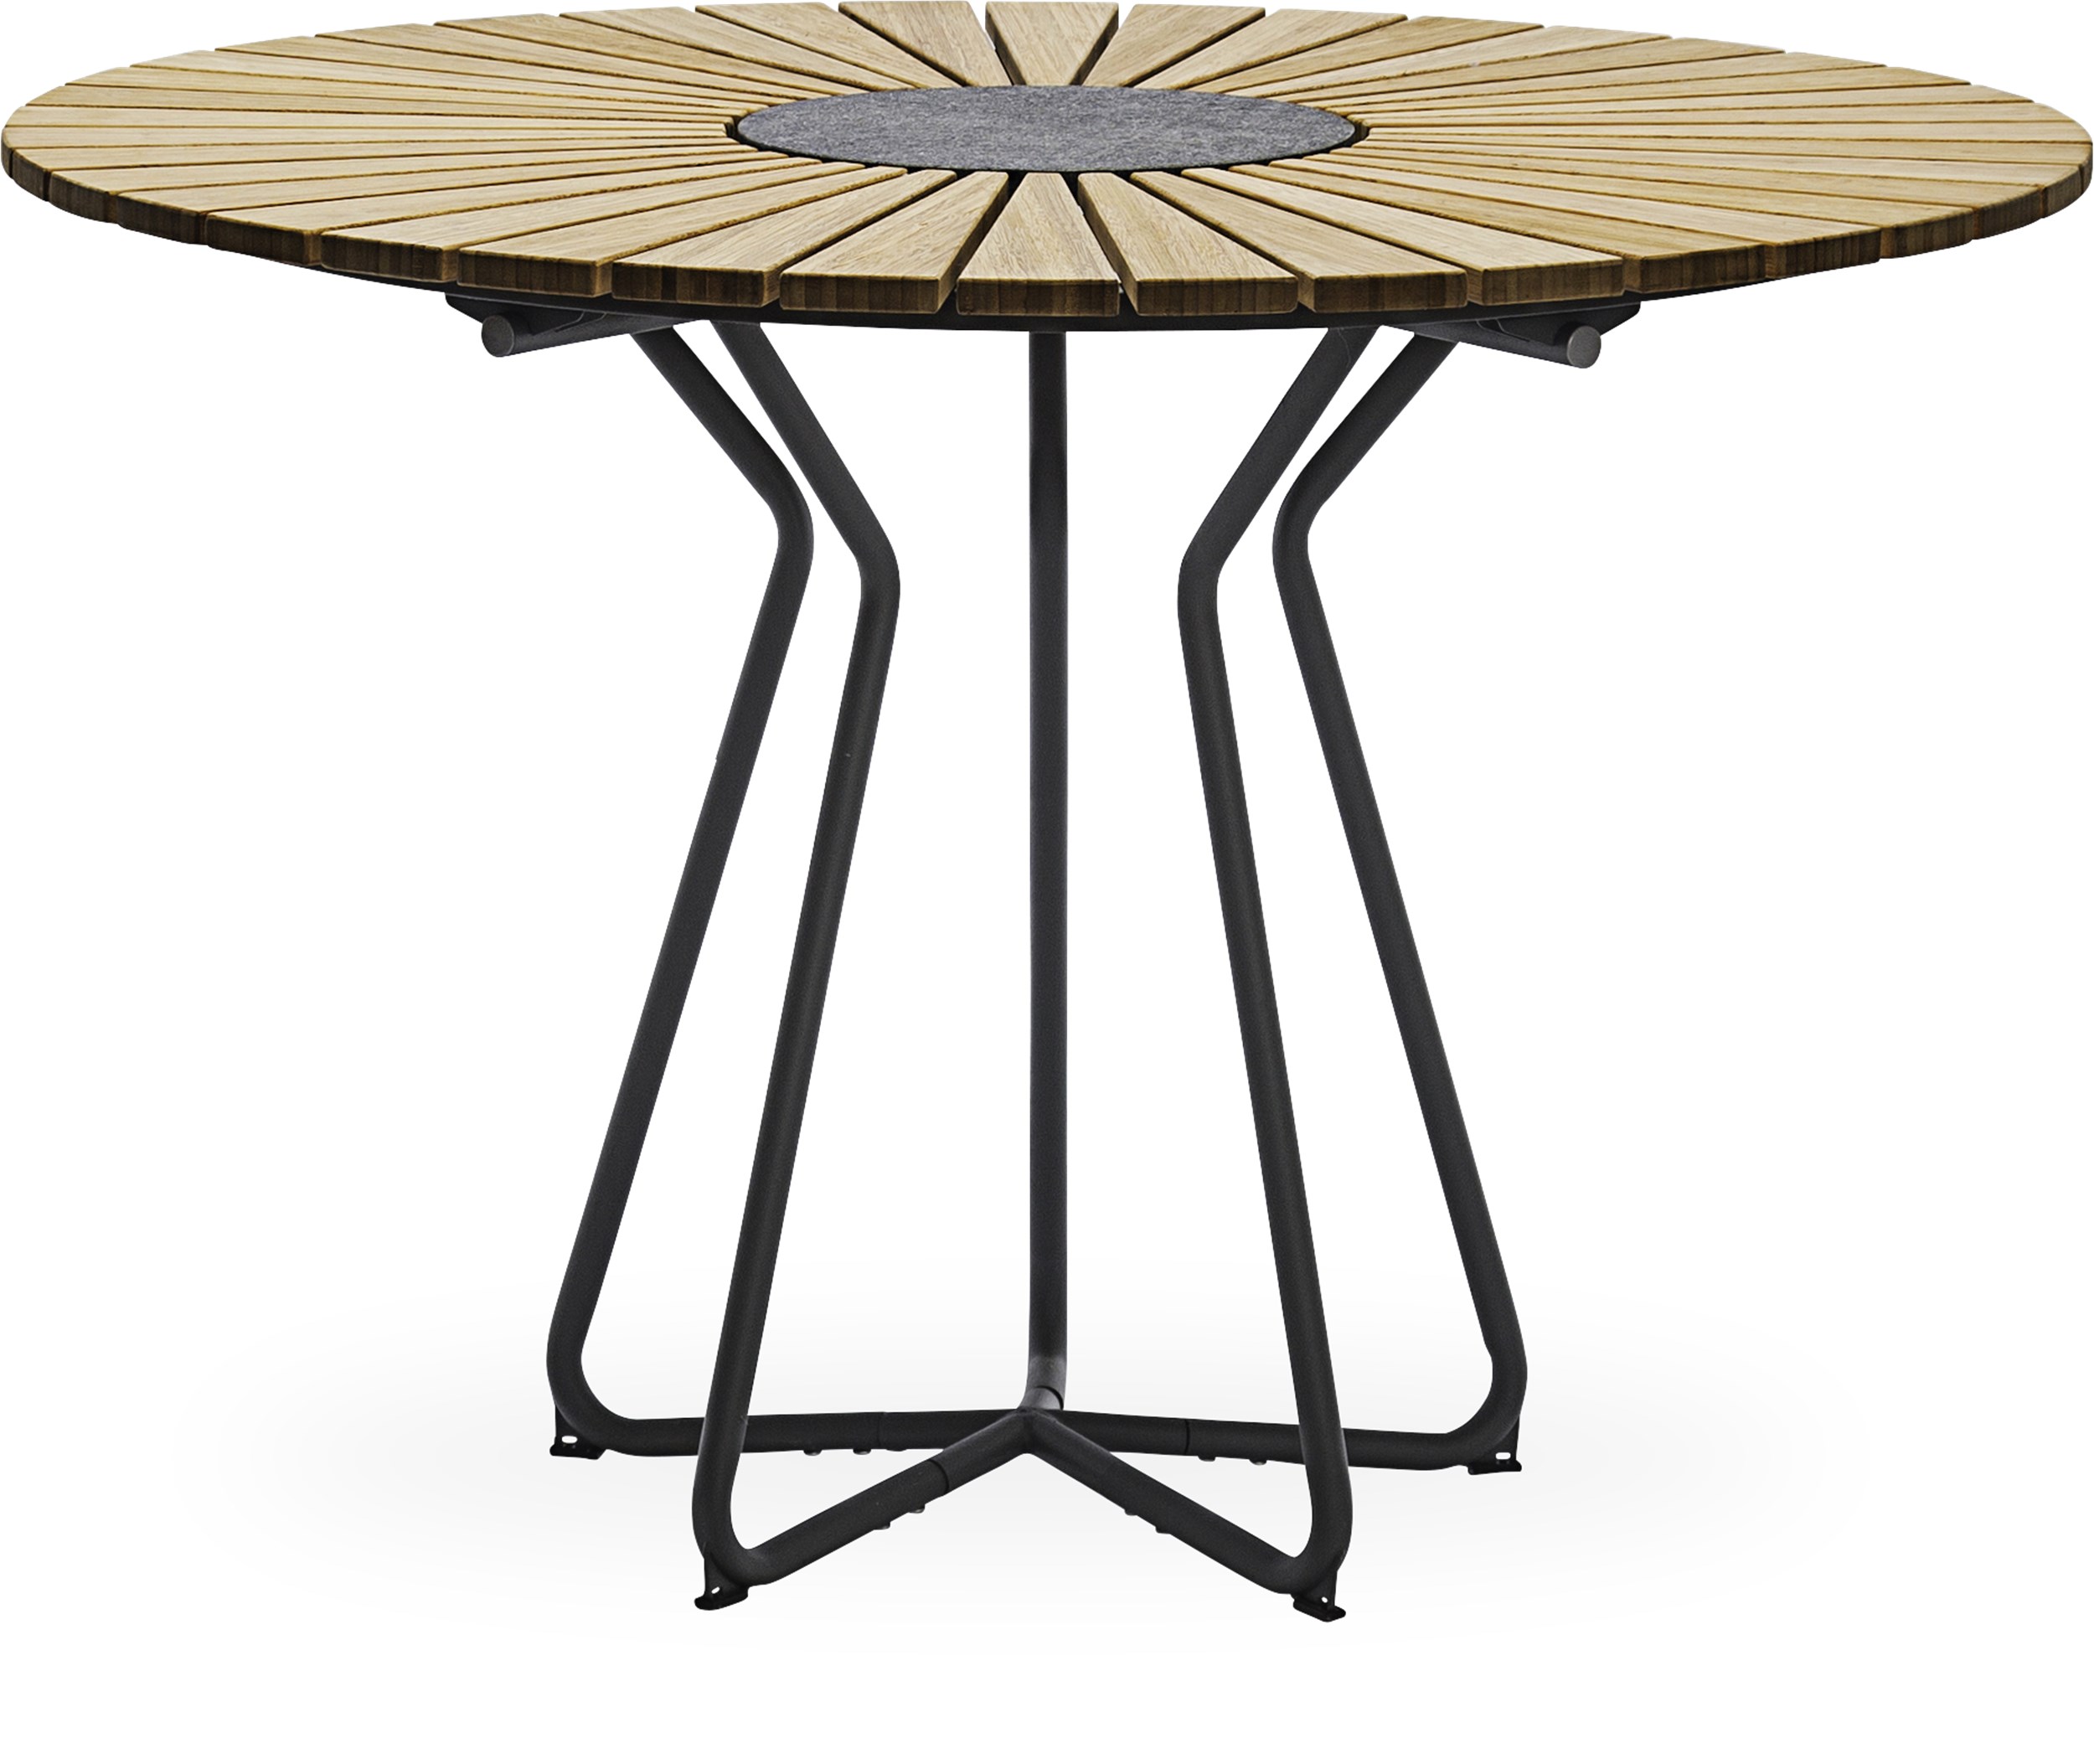 Circle Trädgårdsbord 110 x 74,5 cm - Oljebehandlad bambu, granit i mitten och stomme i stålgrå metall